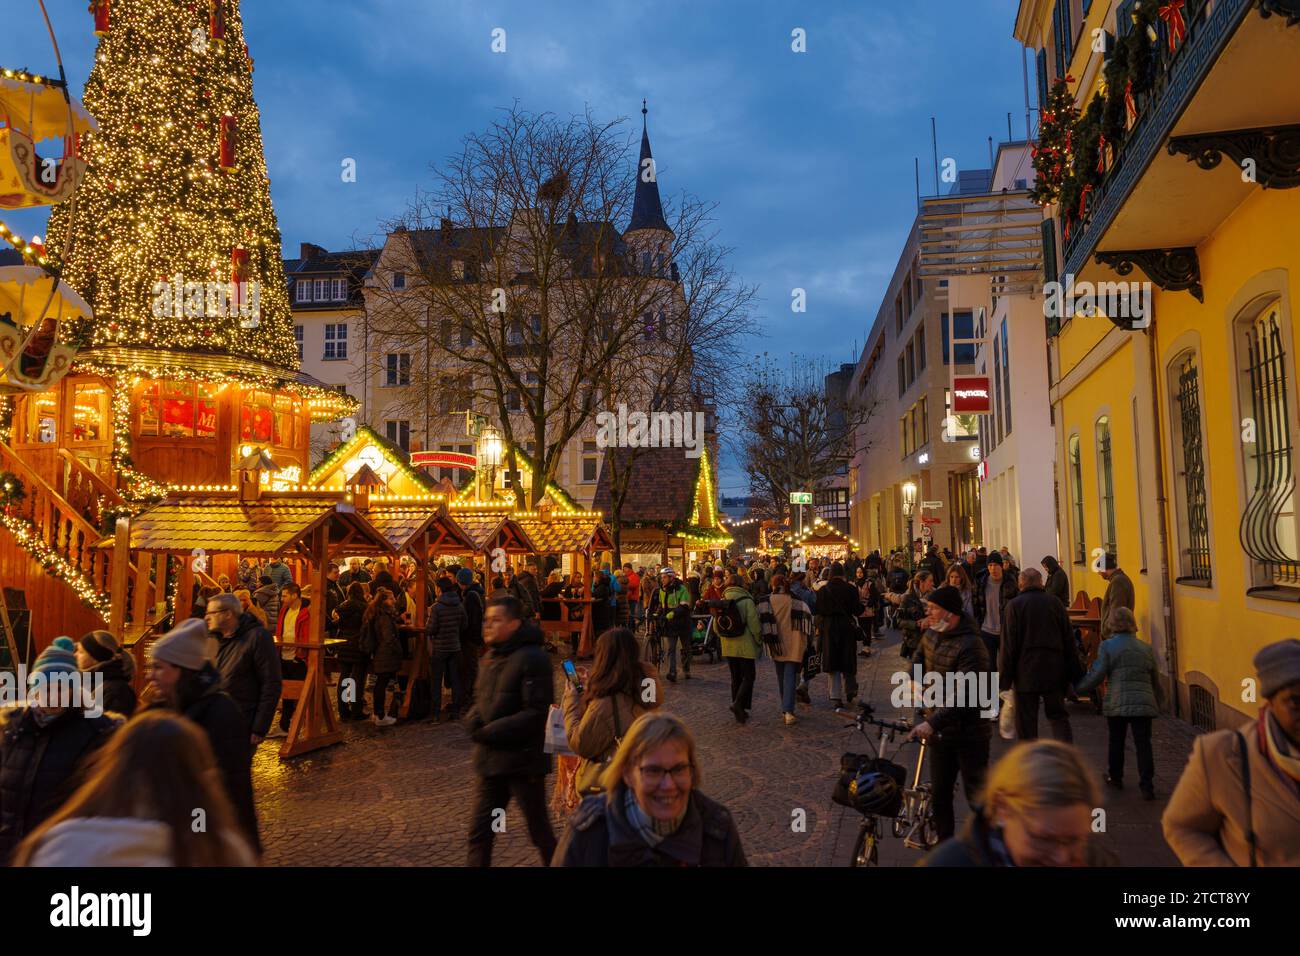 Bonn, Allemagne - 6 décembre 2023 : vue d'un marché de Noël bondé avec des lumières festives, un arbre décoré et des étals de vacances, avec un grand emer illuminé Banque D'Images